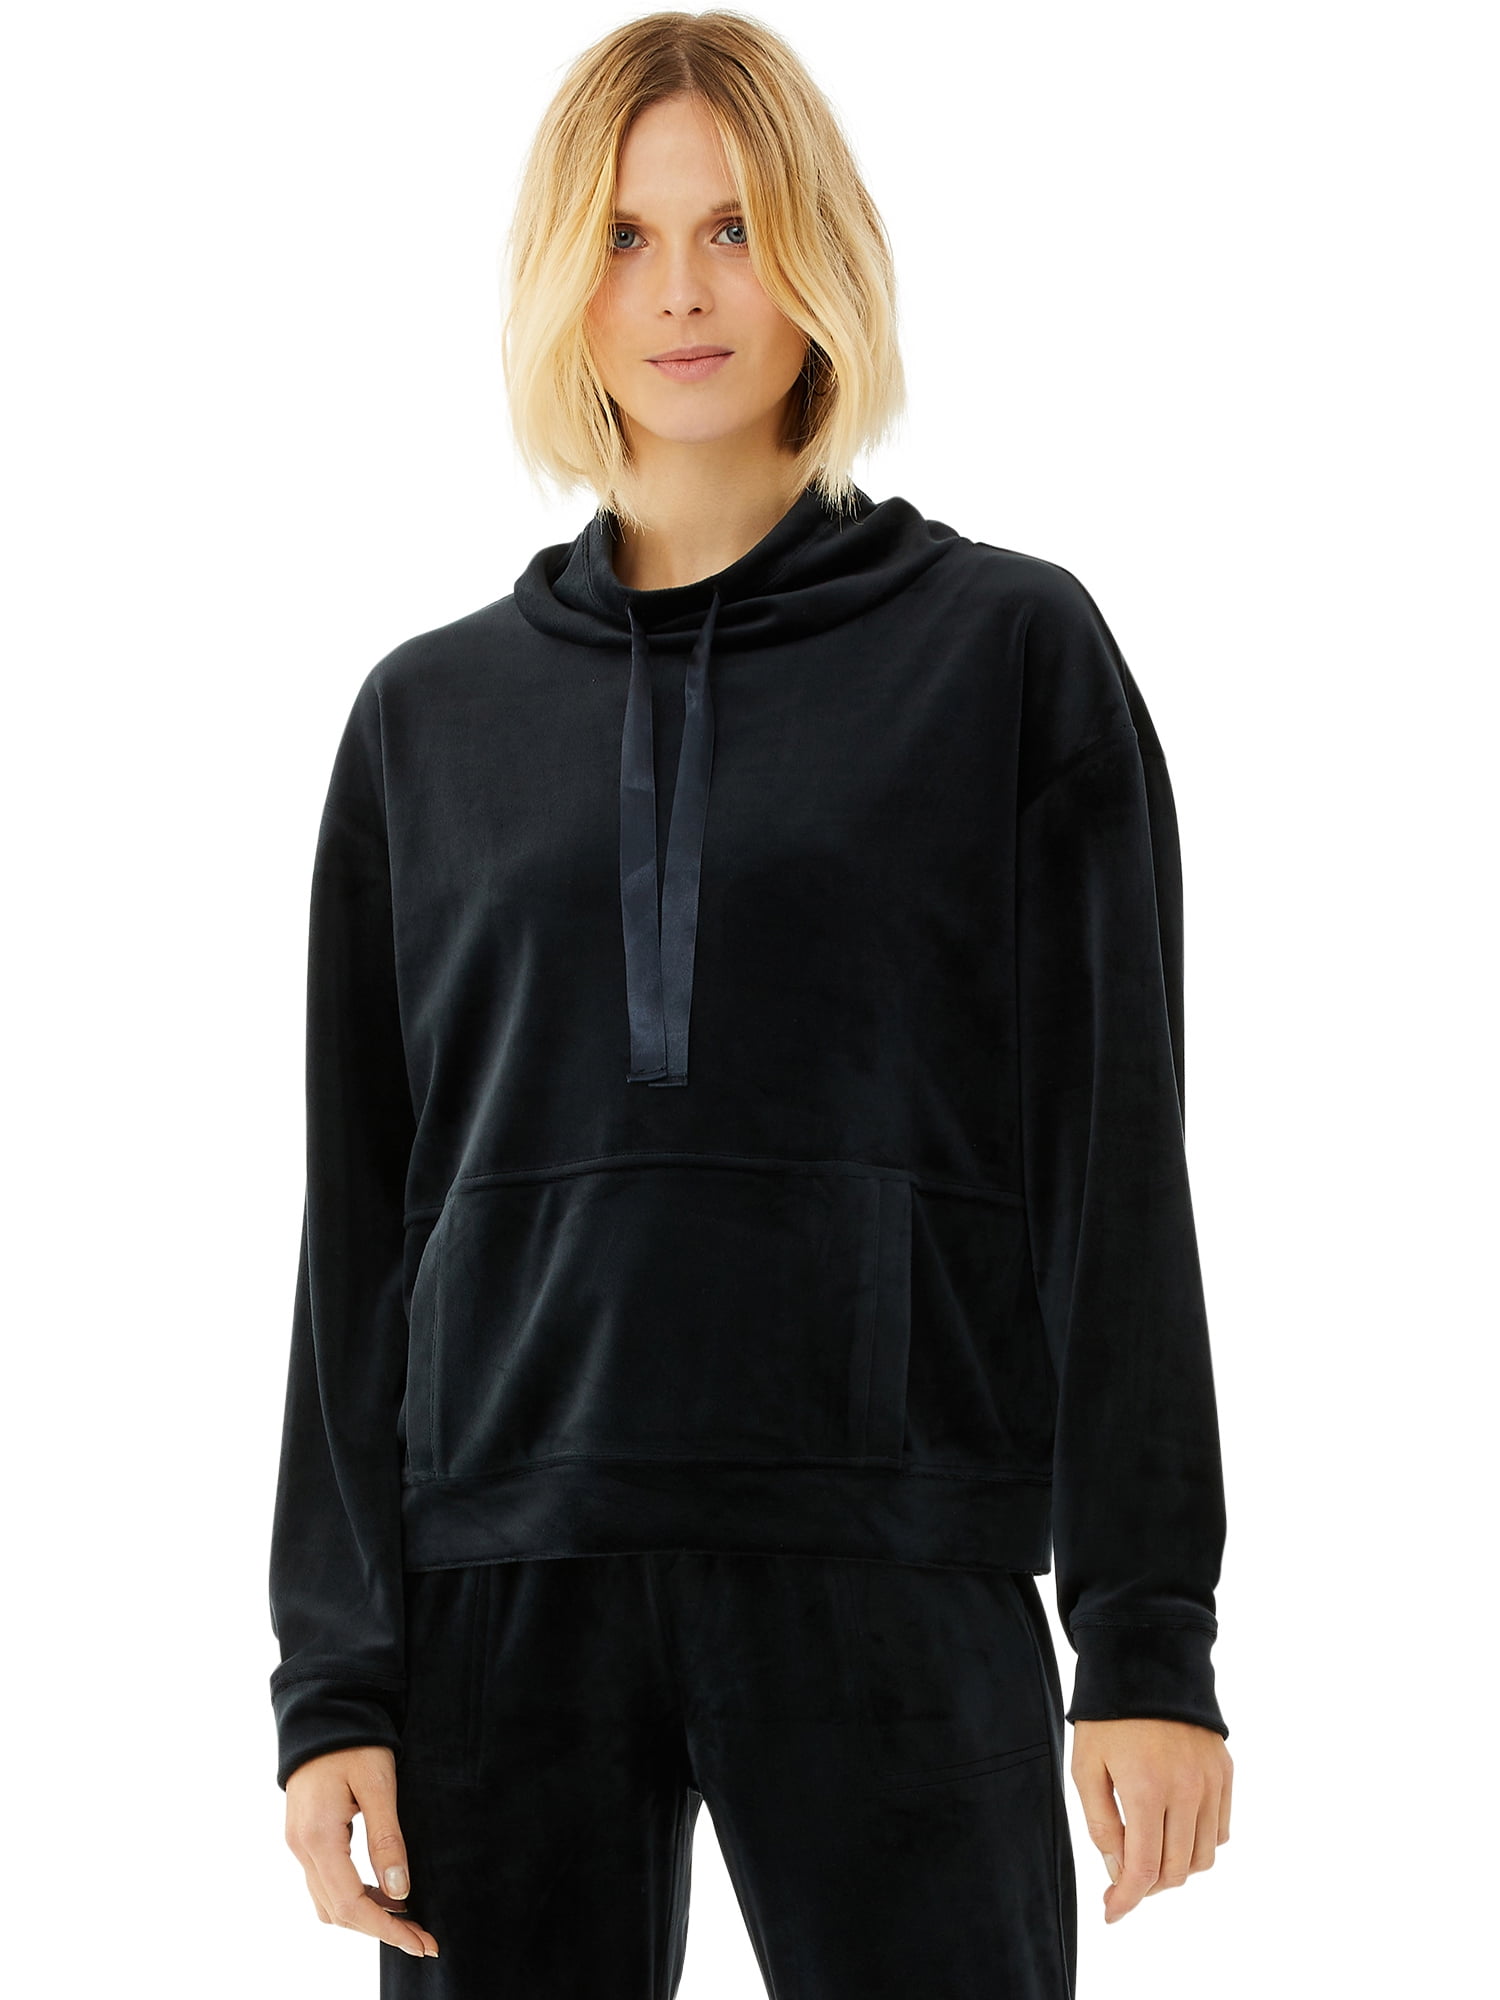 Scoop Women’s Funnel Neck Velour Sweatshirt with Pockets - Walmart.com